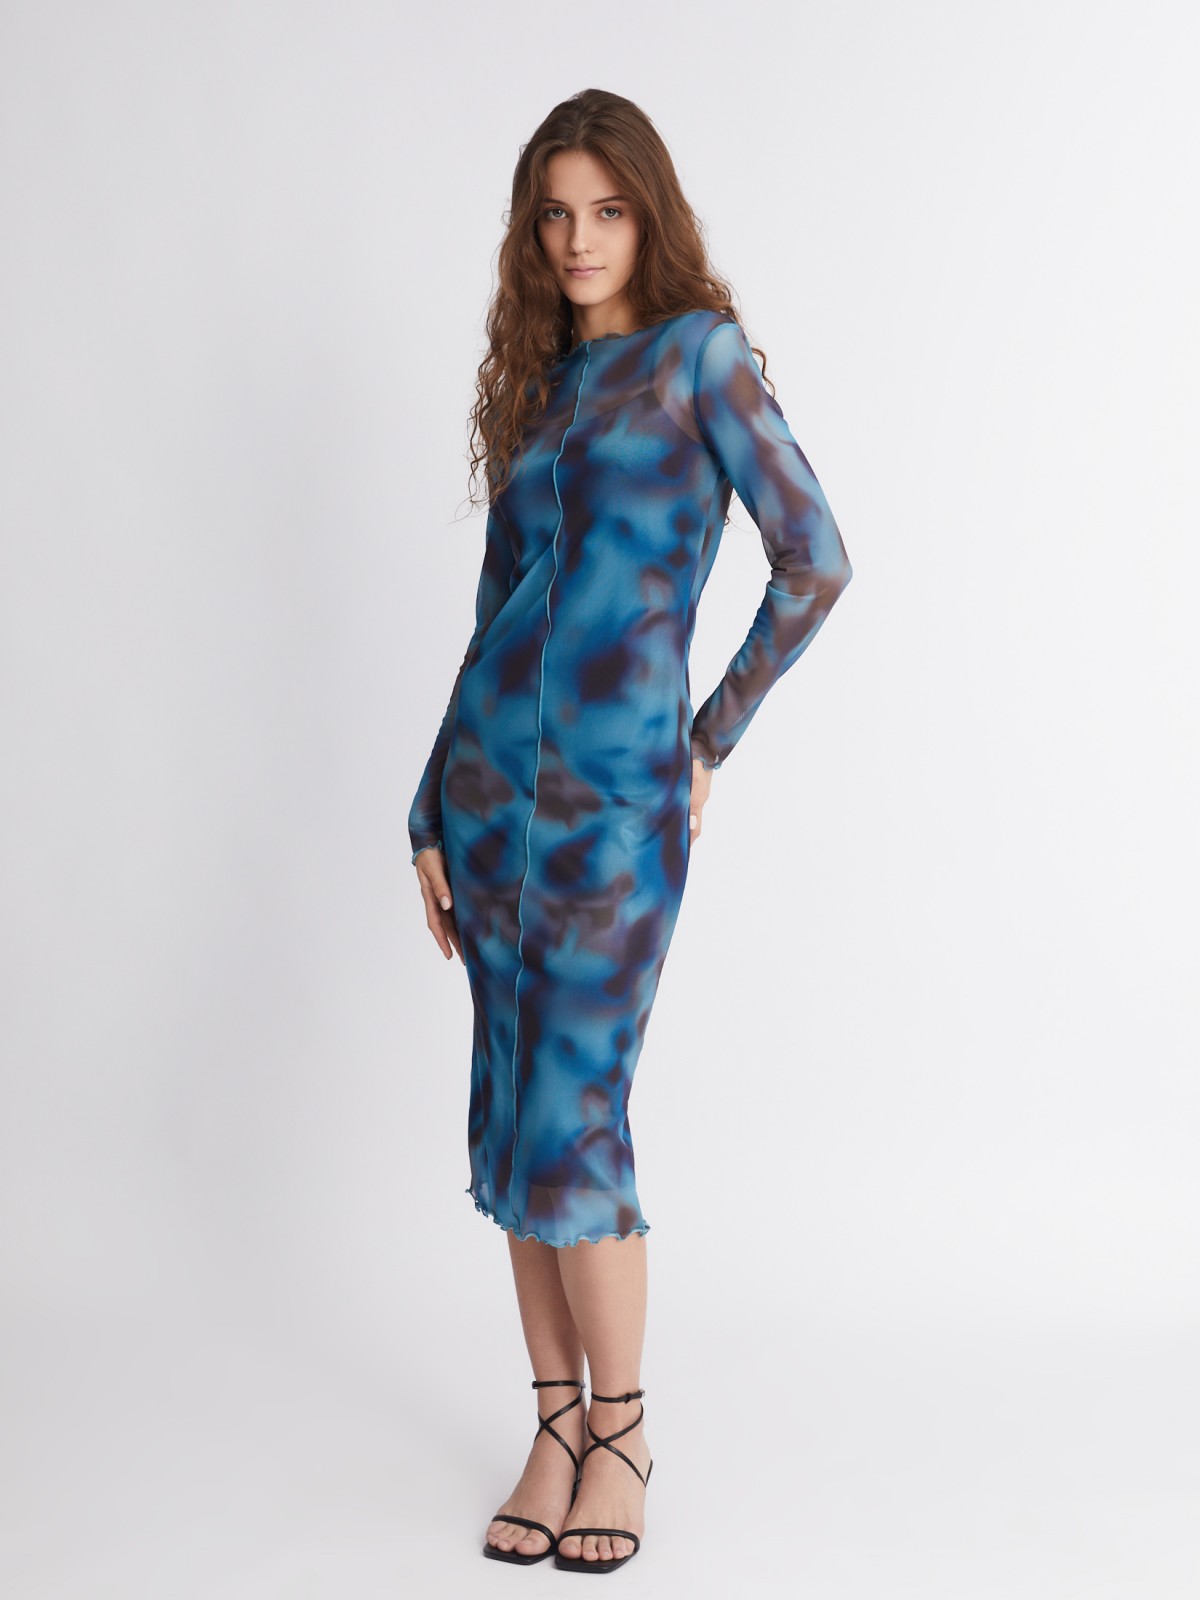 Платье из сетчатой ткани длины миди с акцентным принтом и фактурными строчками zolla 223338155111, цвет голубой, размер S - фото 2